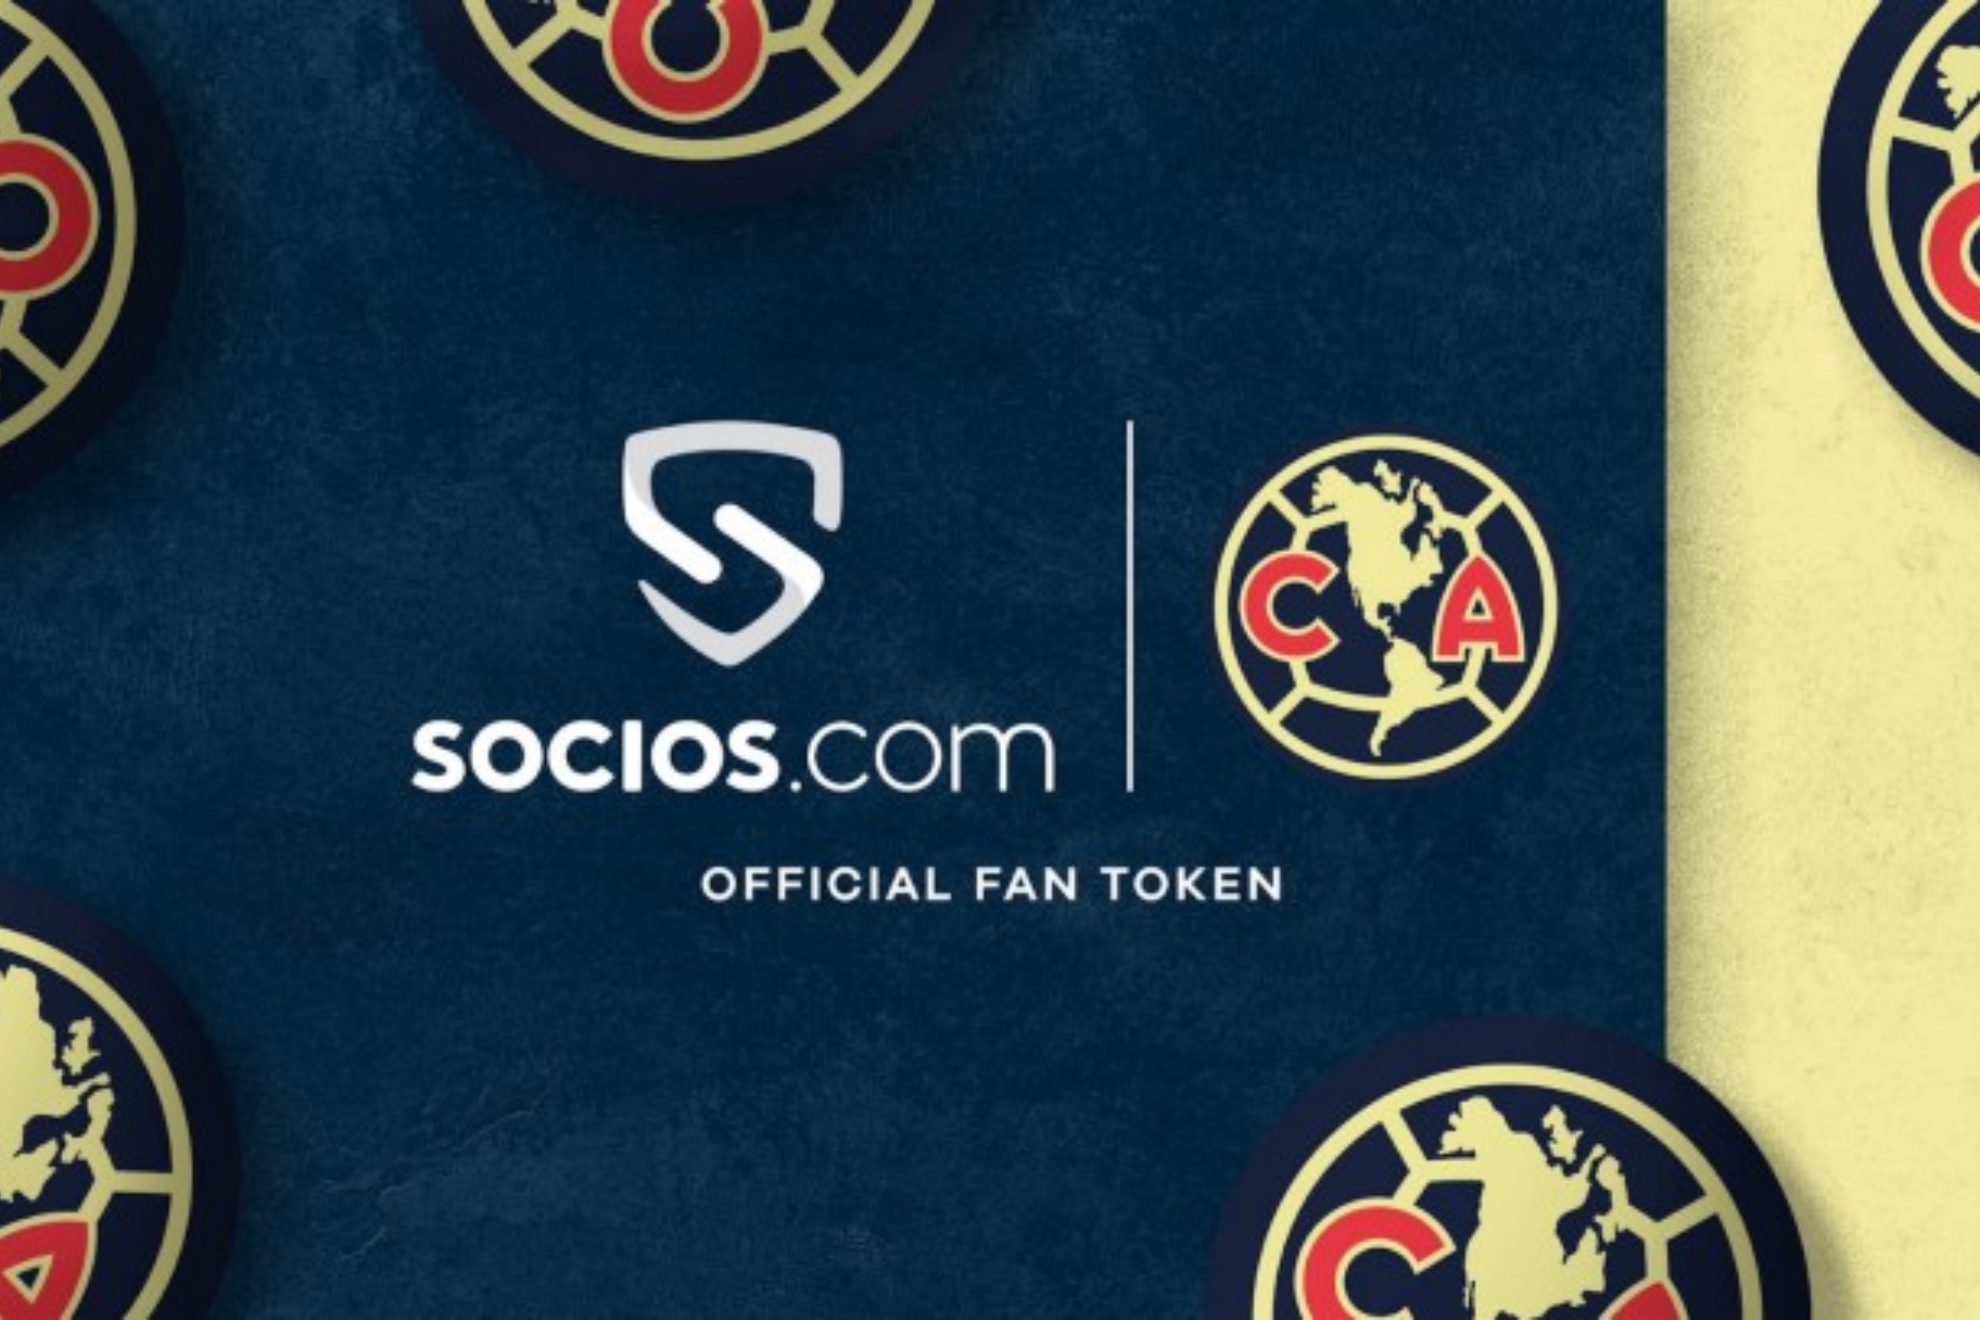 Club América se une a Socios.com para lanzar su Fan Token oficial